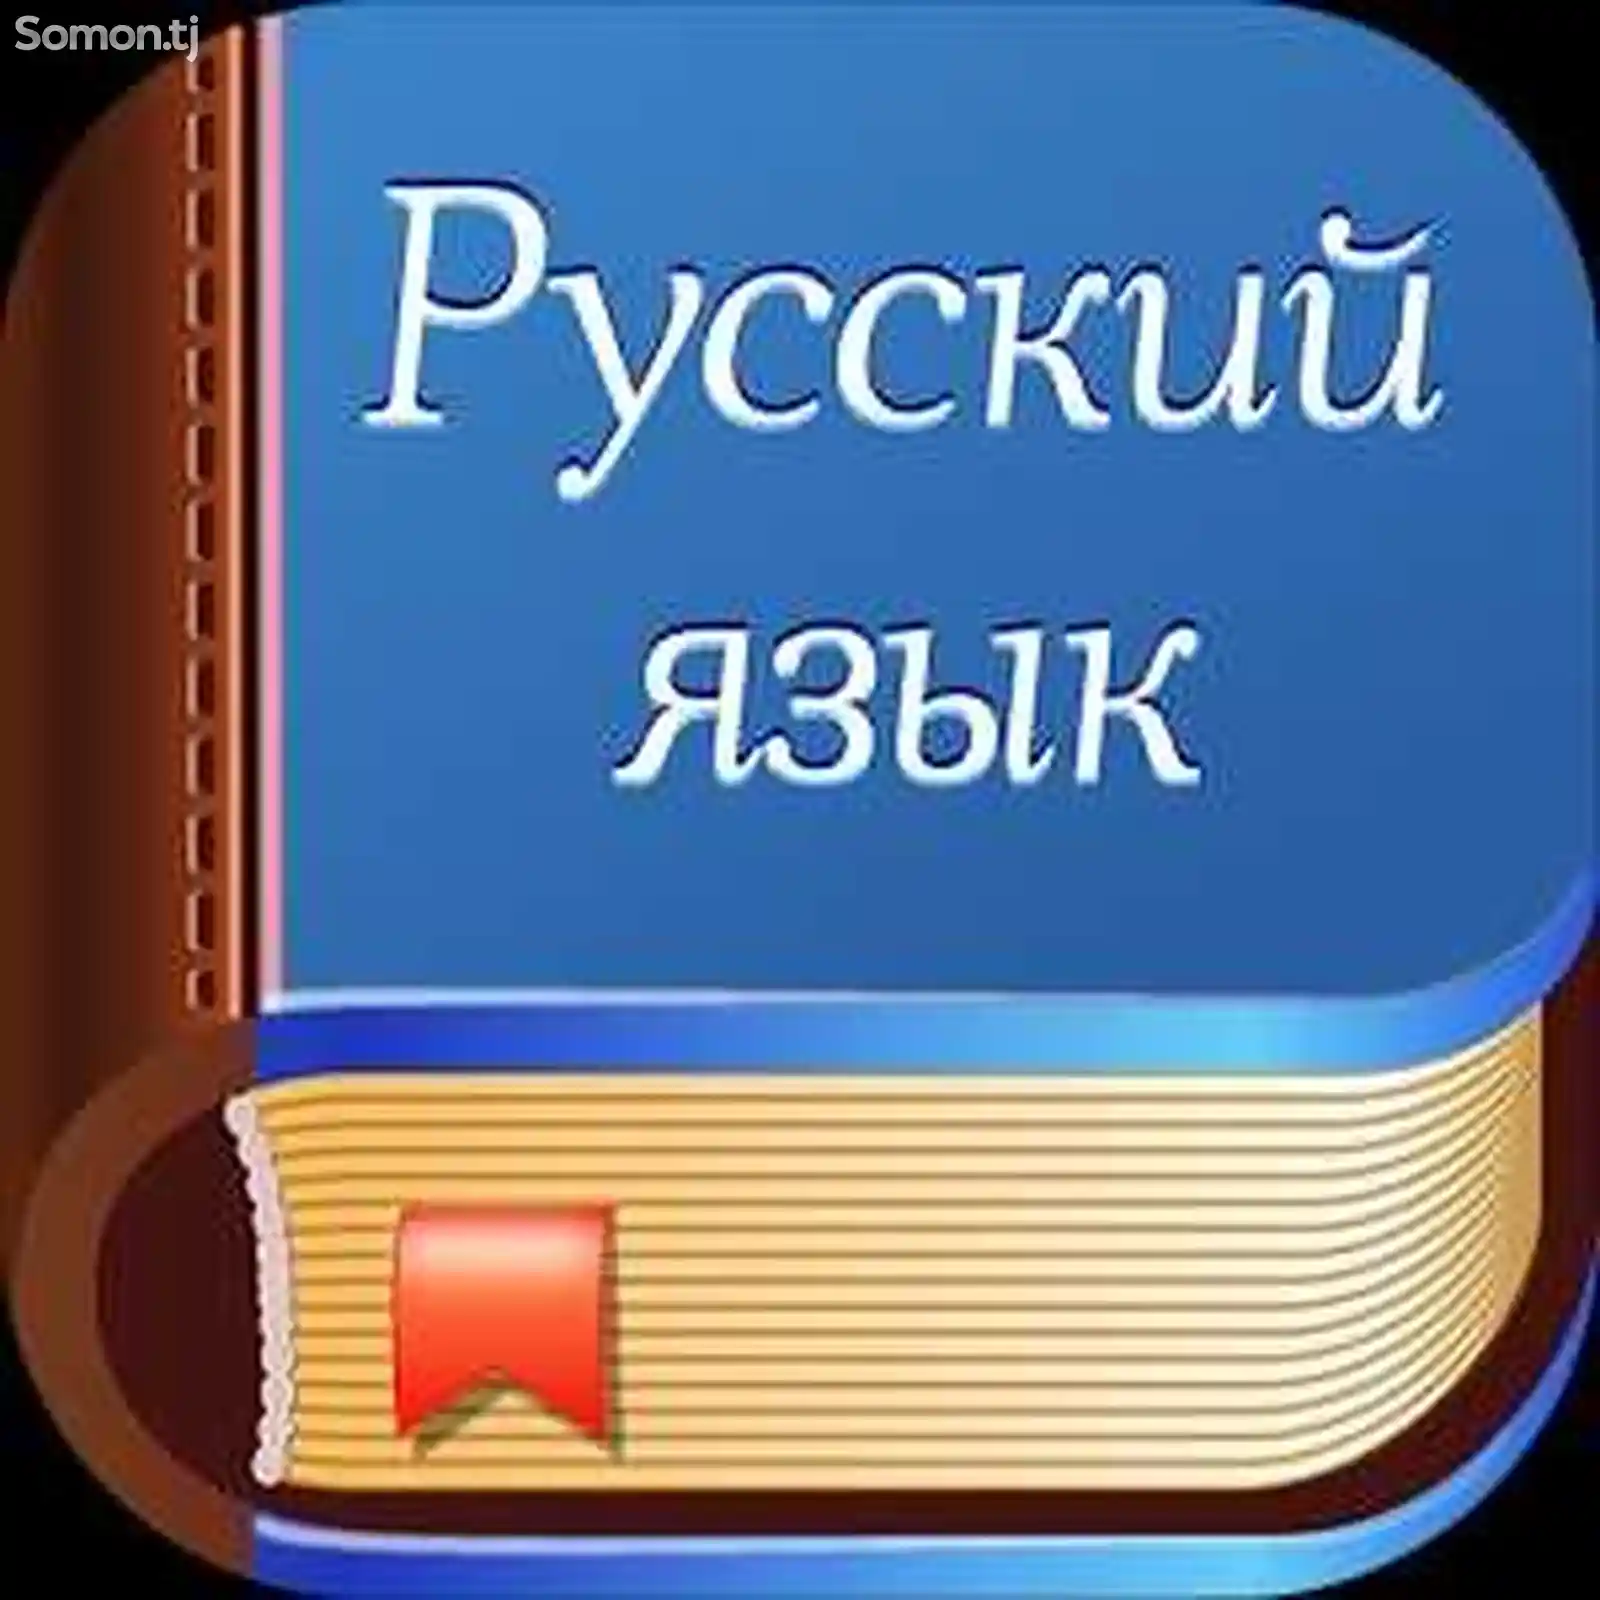 Обучение русскому языку